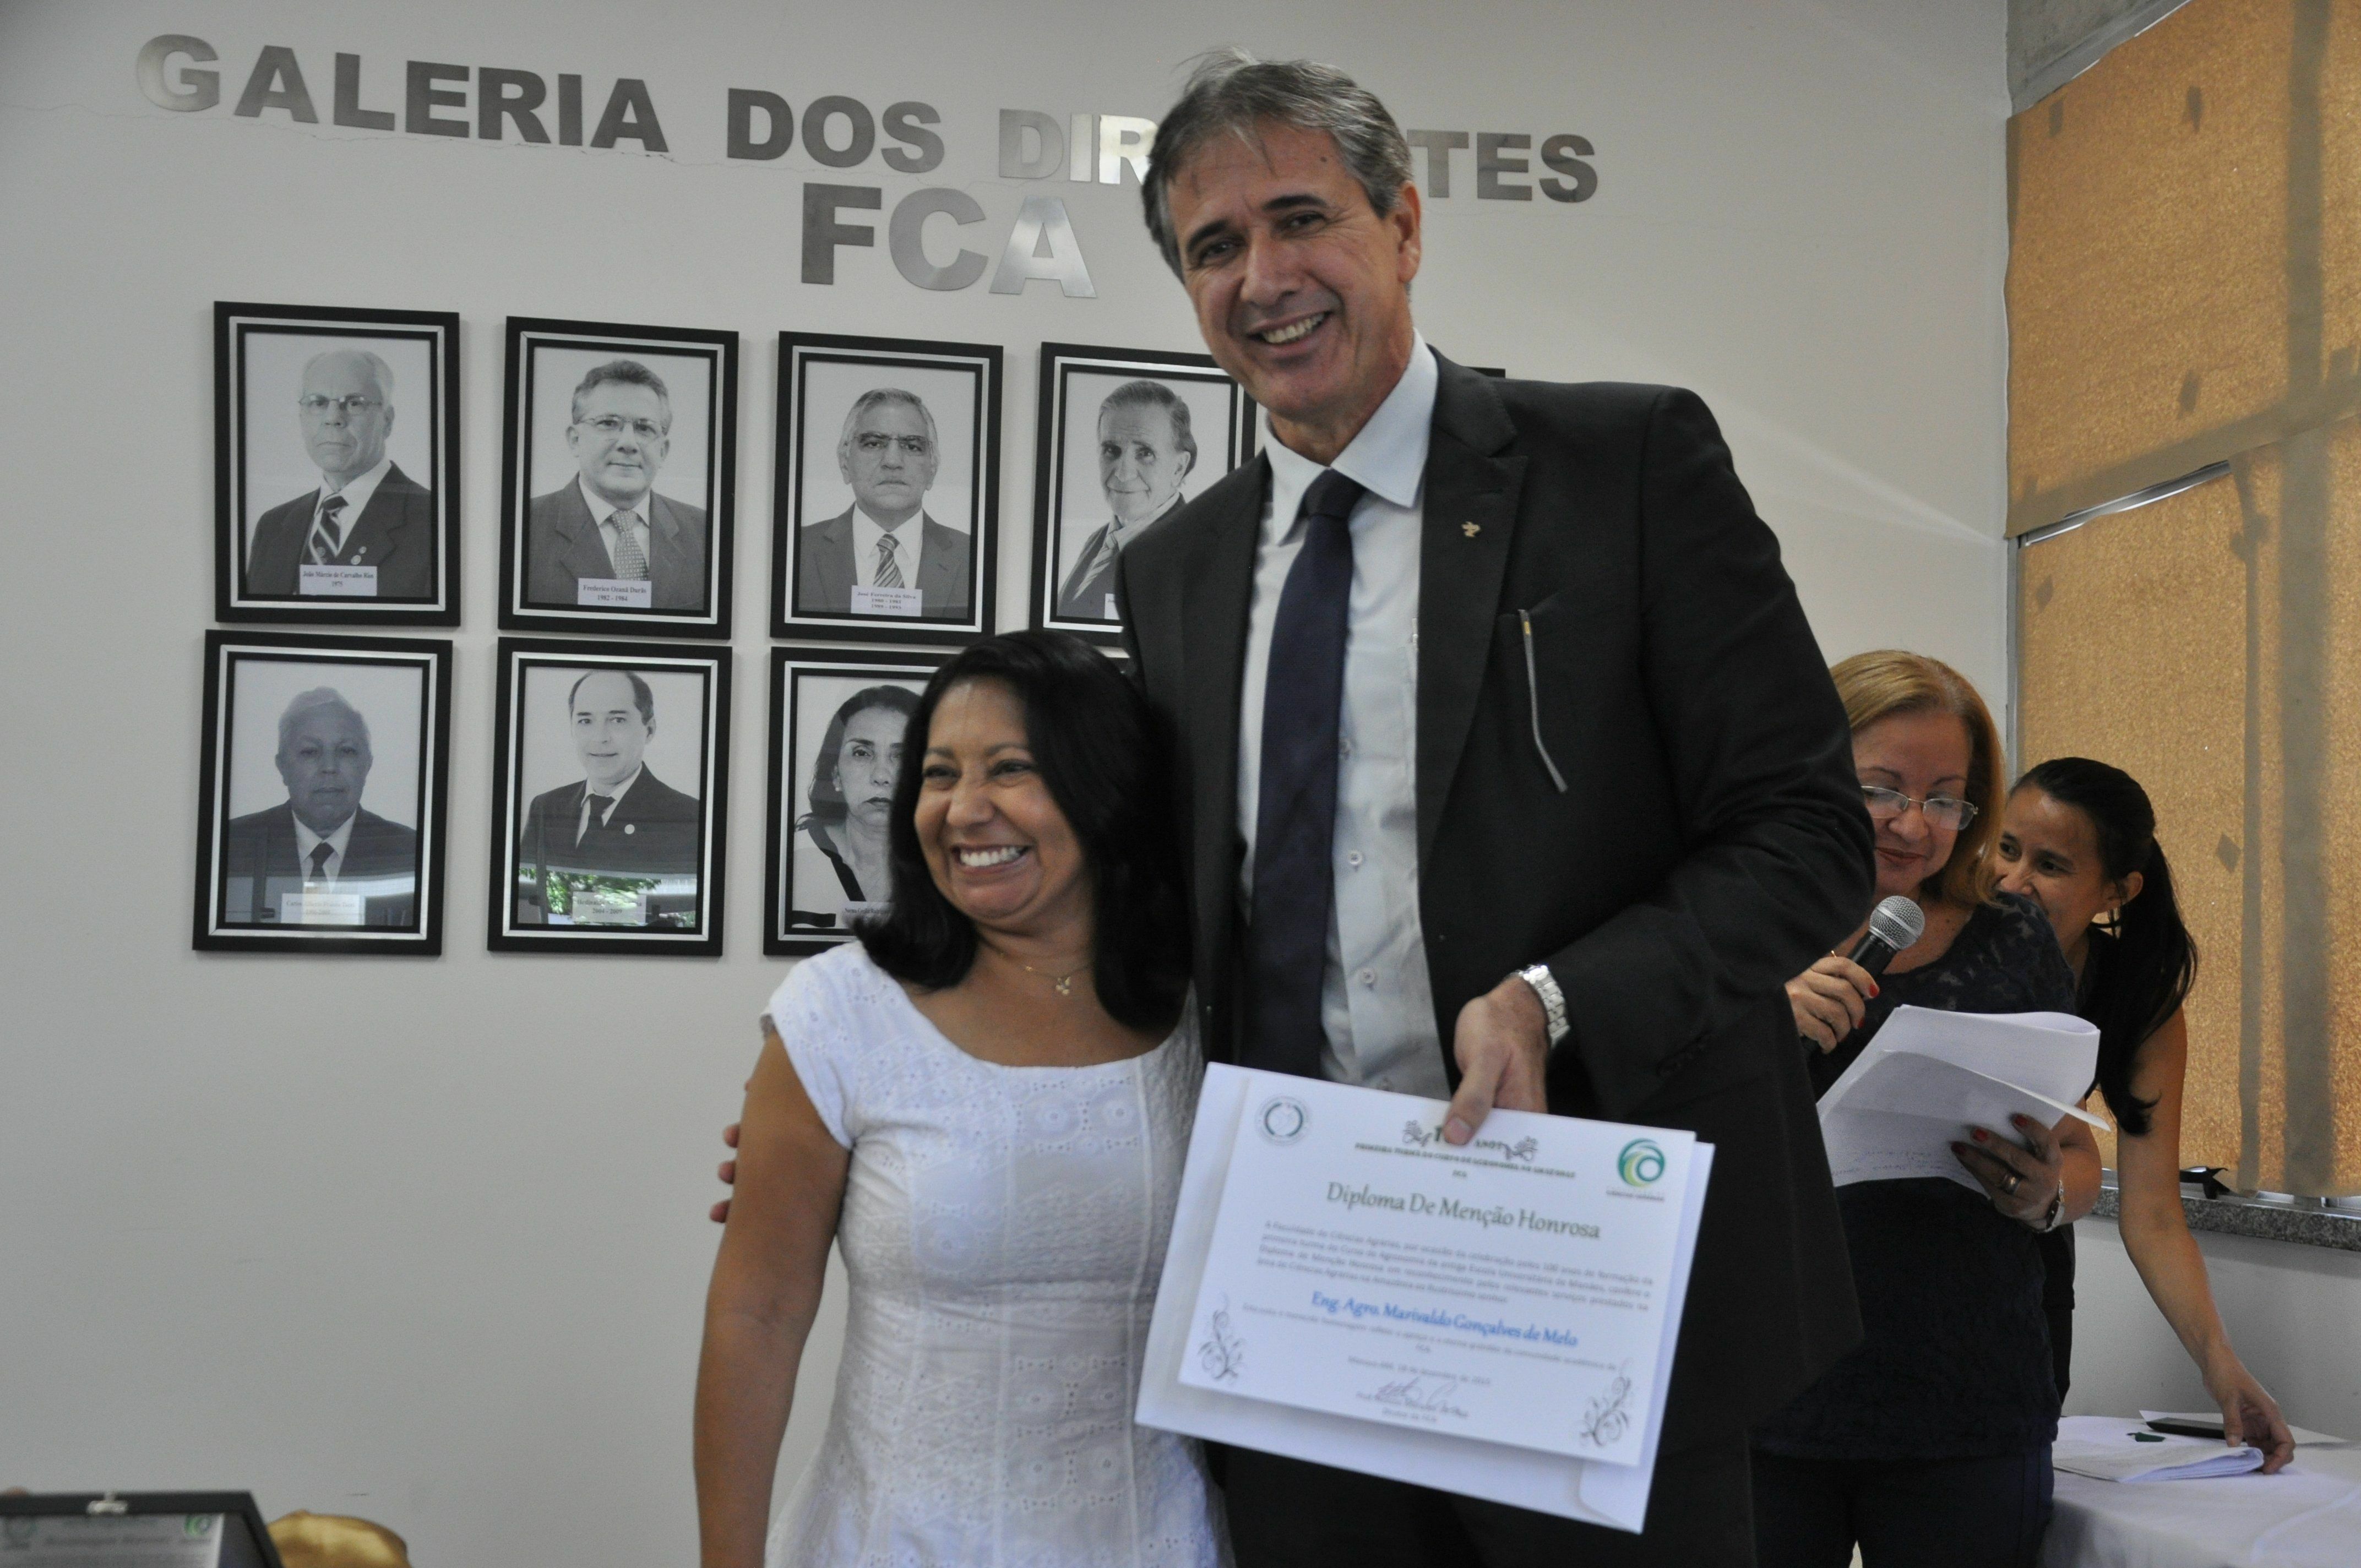 Professora Ângela da Silva (FCA) e o homenageado Marivaldo de Melo